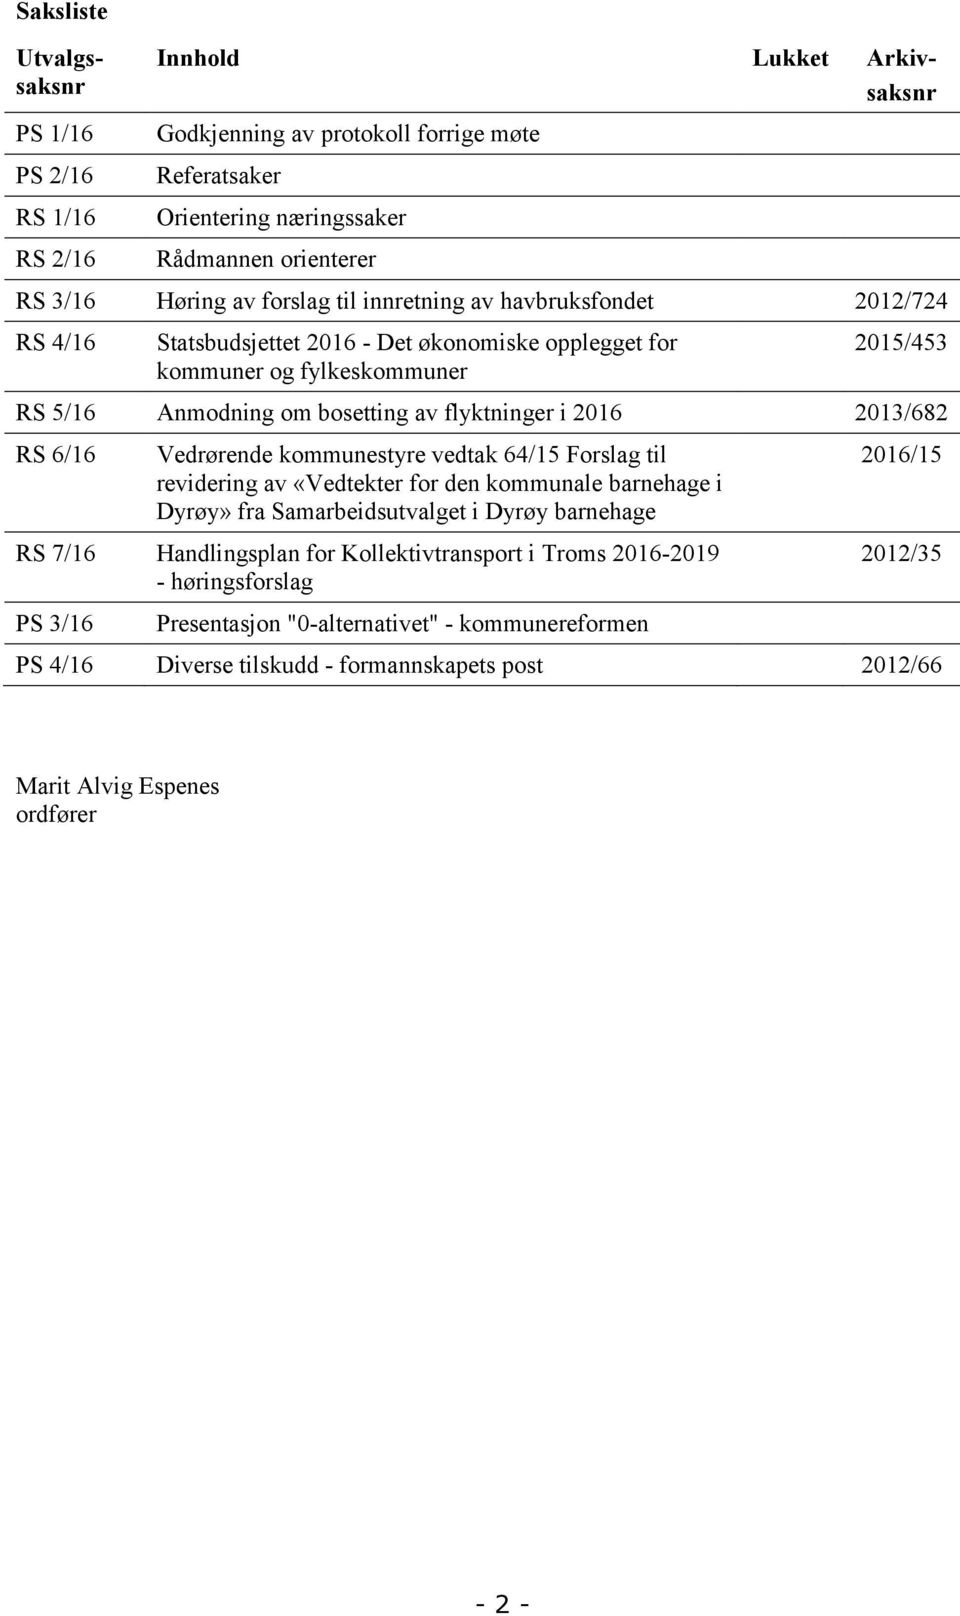 6/16 Vedrørende kommunestyre vedtak 64/15 Forslag til revidering av «Vedtekter for den kommunale barnehage i Dyrøy» fra Samarbeidsutvalget i Dyrøy barnehage RS 7/16 Handlingsplan for